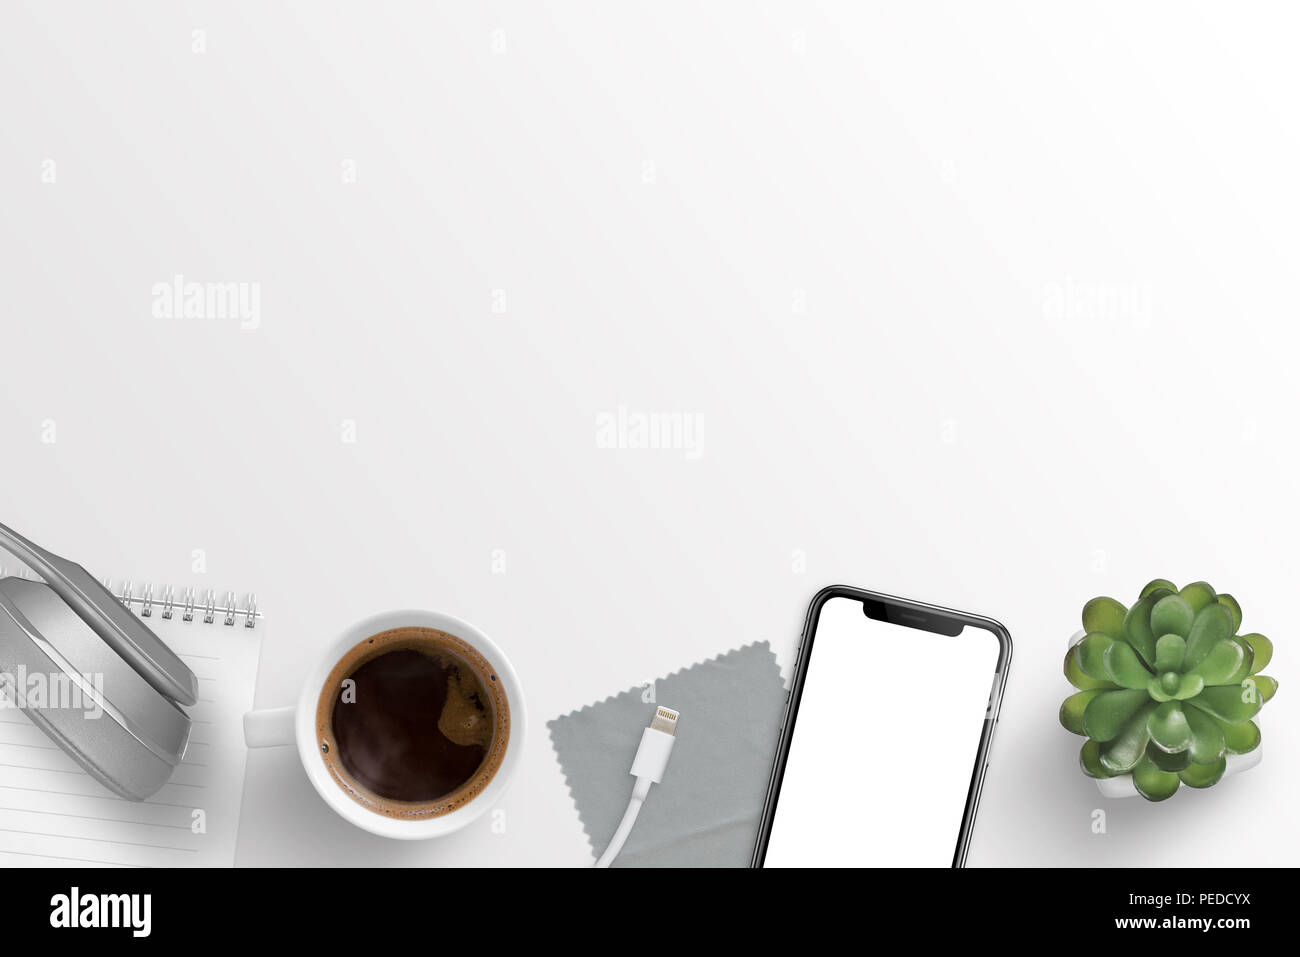 Büro Schreibtisch Zusammensetzung mit Kopfhörern, Notepad, Tasse Kaffee, Ladegerät, Tuch, smart phone und Anlage. Freier Platz für Text. Stockfoto